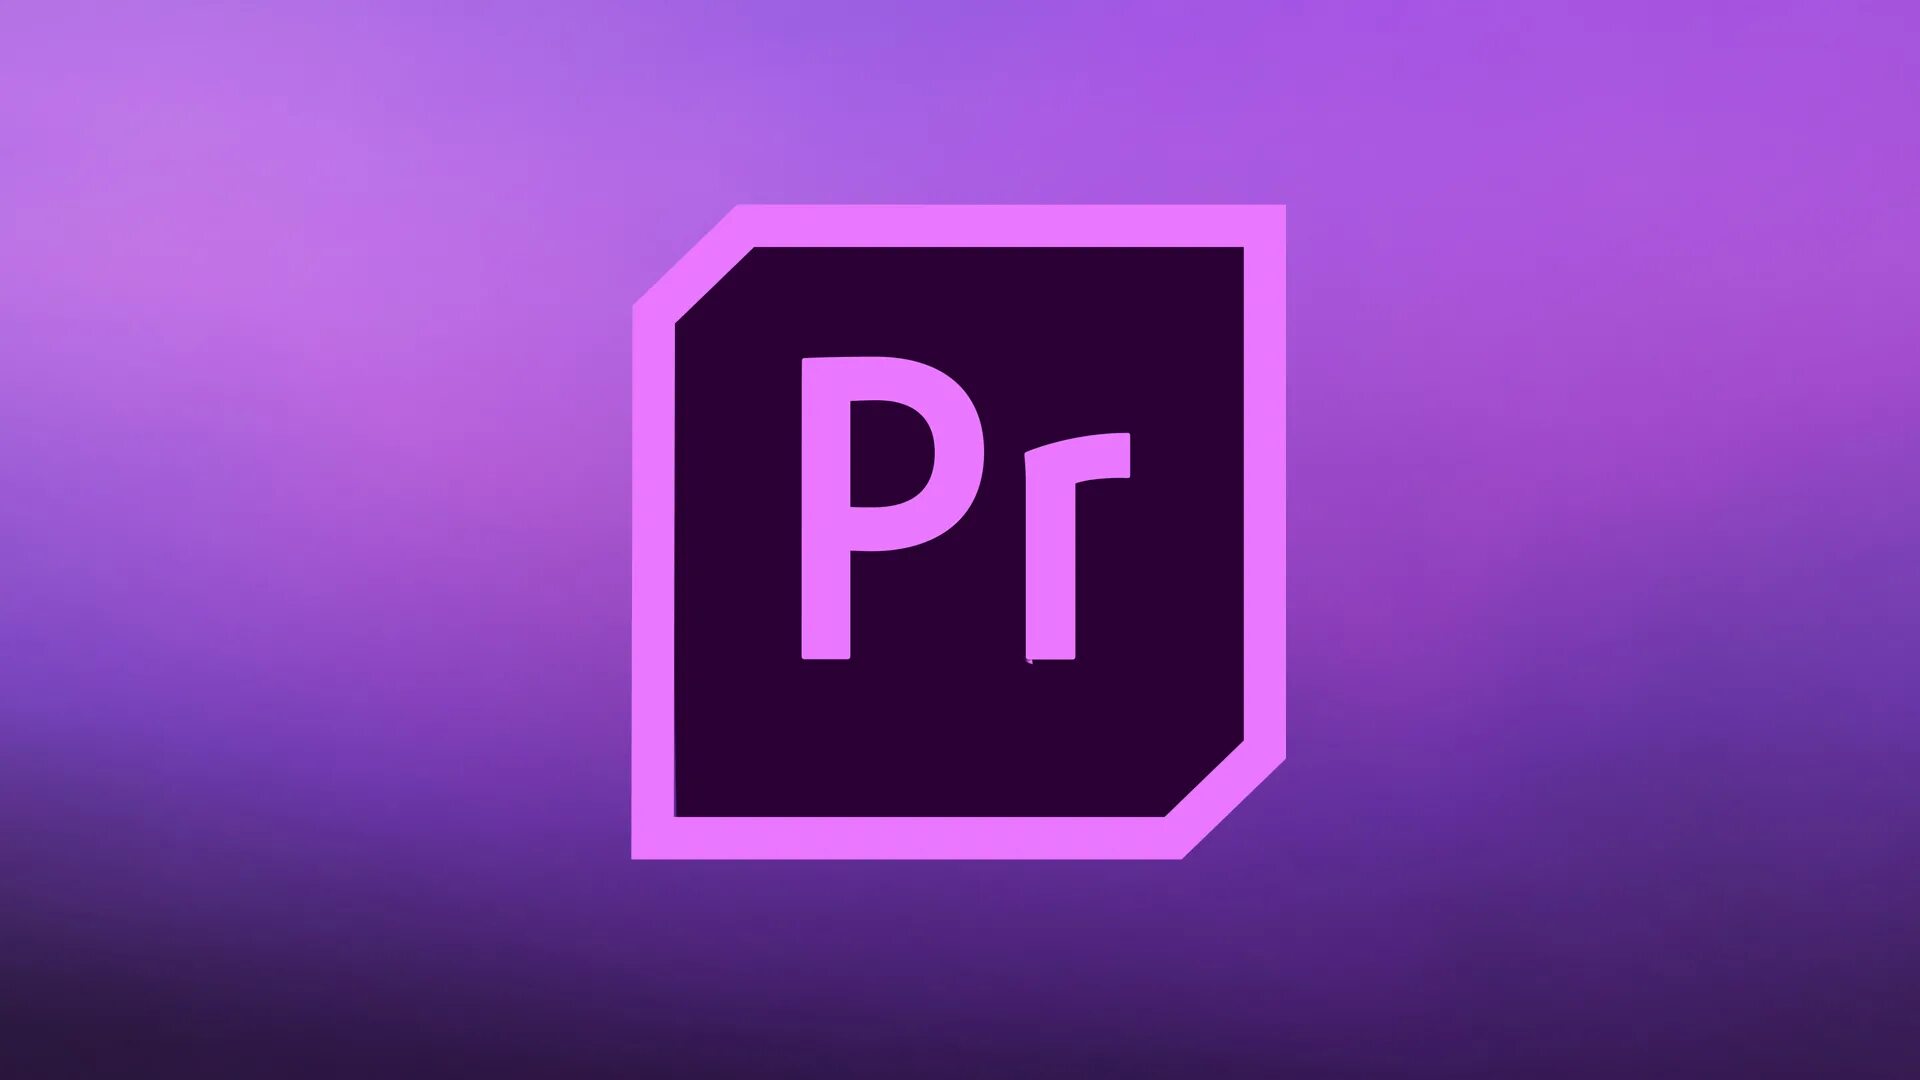 Адоб премьер про. Значок адоб премьер. Иконка адоб премьер про. Значок Adobe Premiere Pro. Премьер про лого.